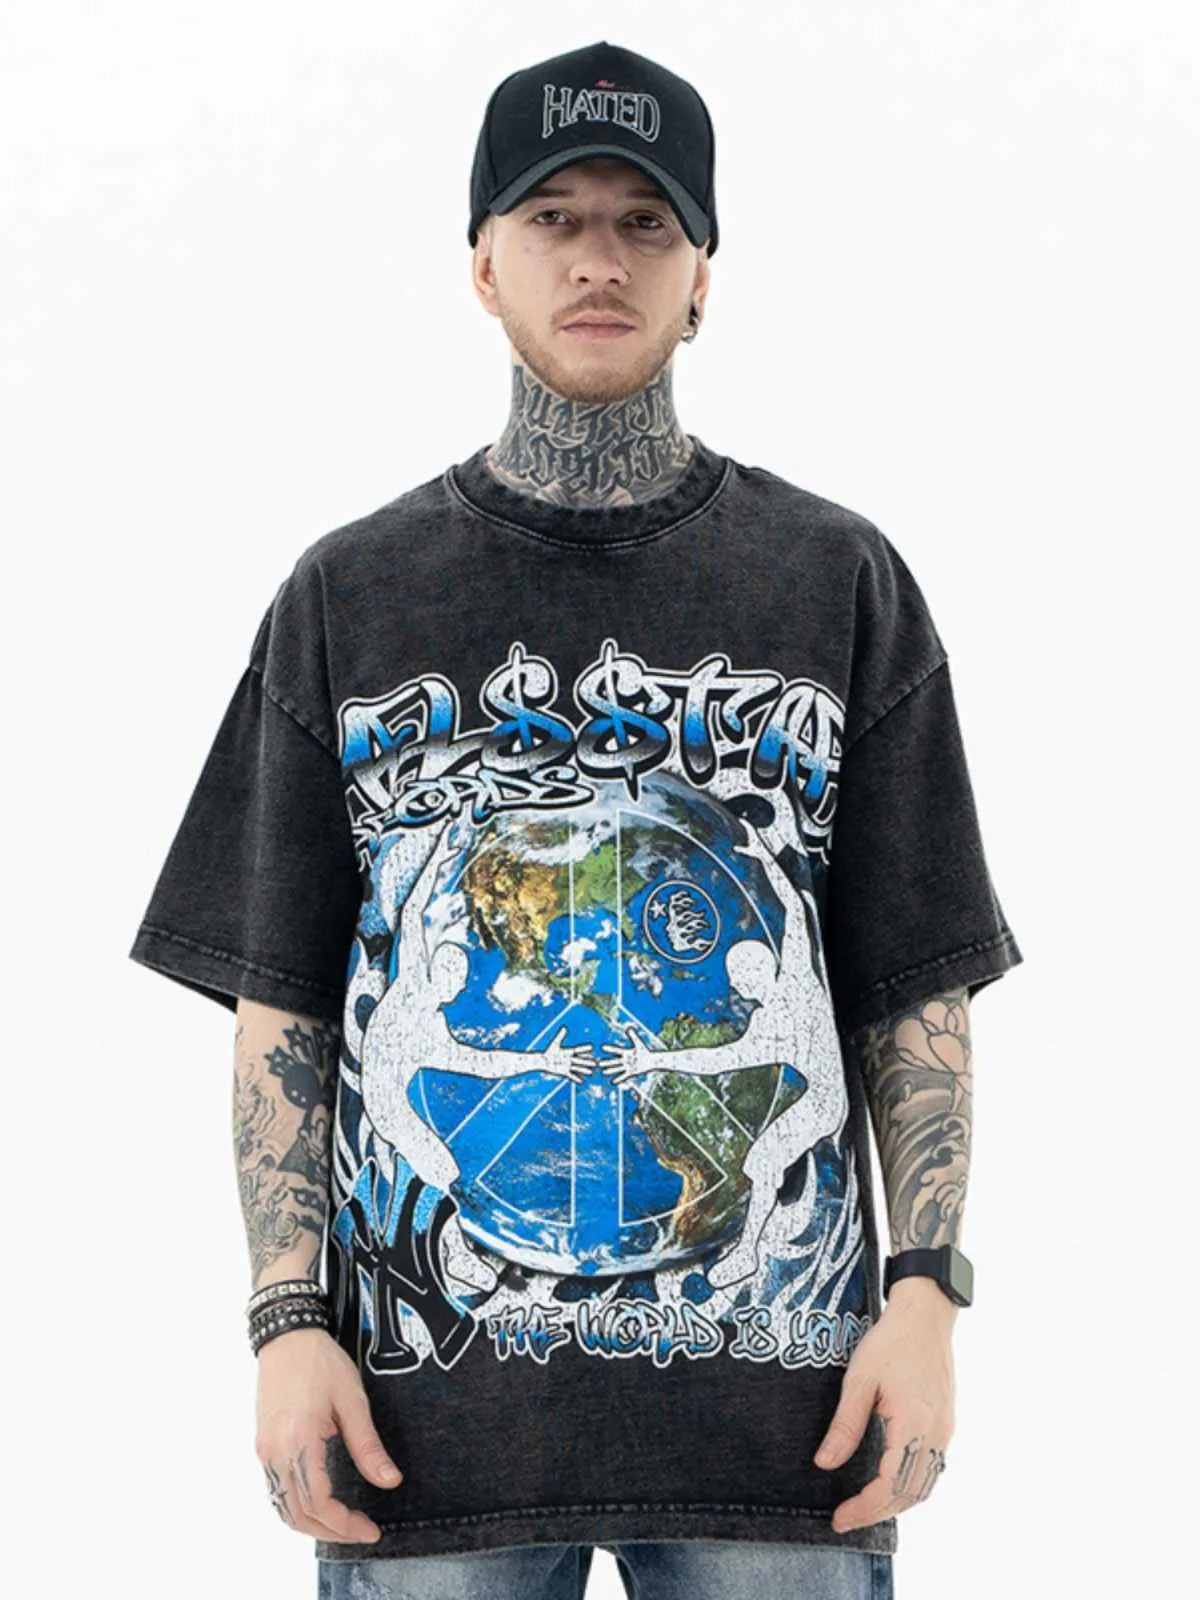 American Heiistar Hell Star Imprimé à manches courtes à manches lavées vintage T-shirt en vrac décontracté pour les hommes et les femmes